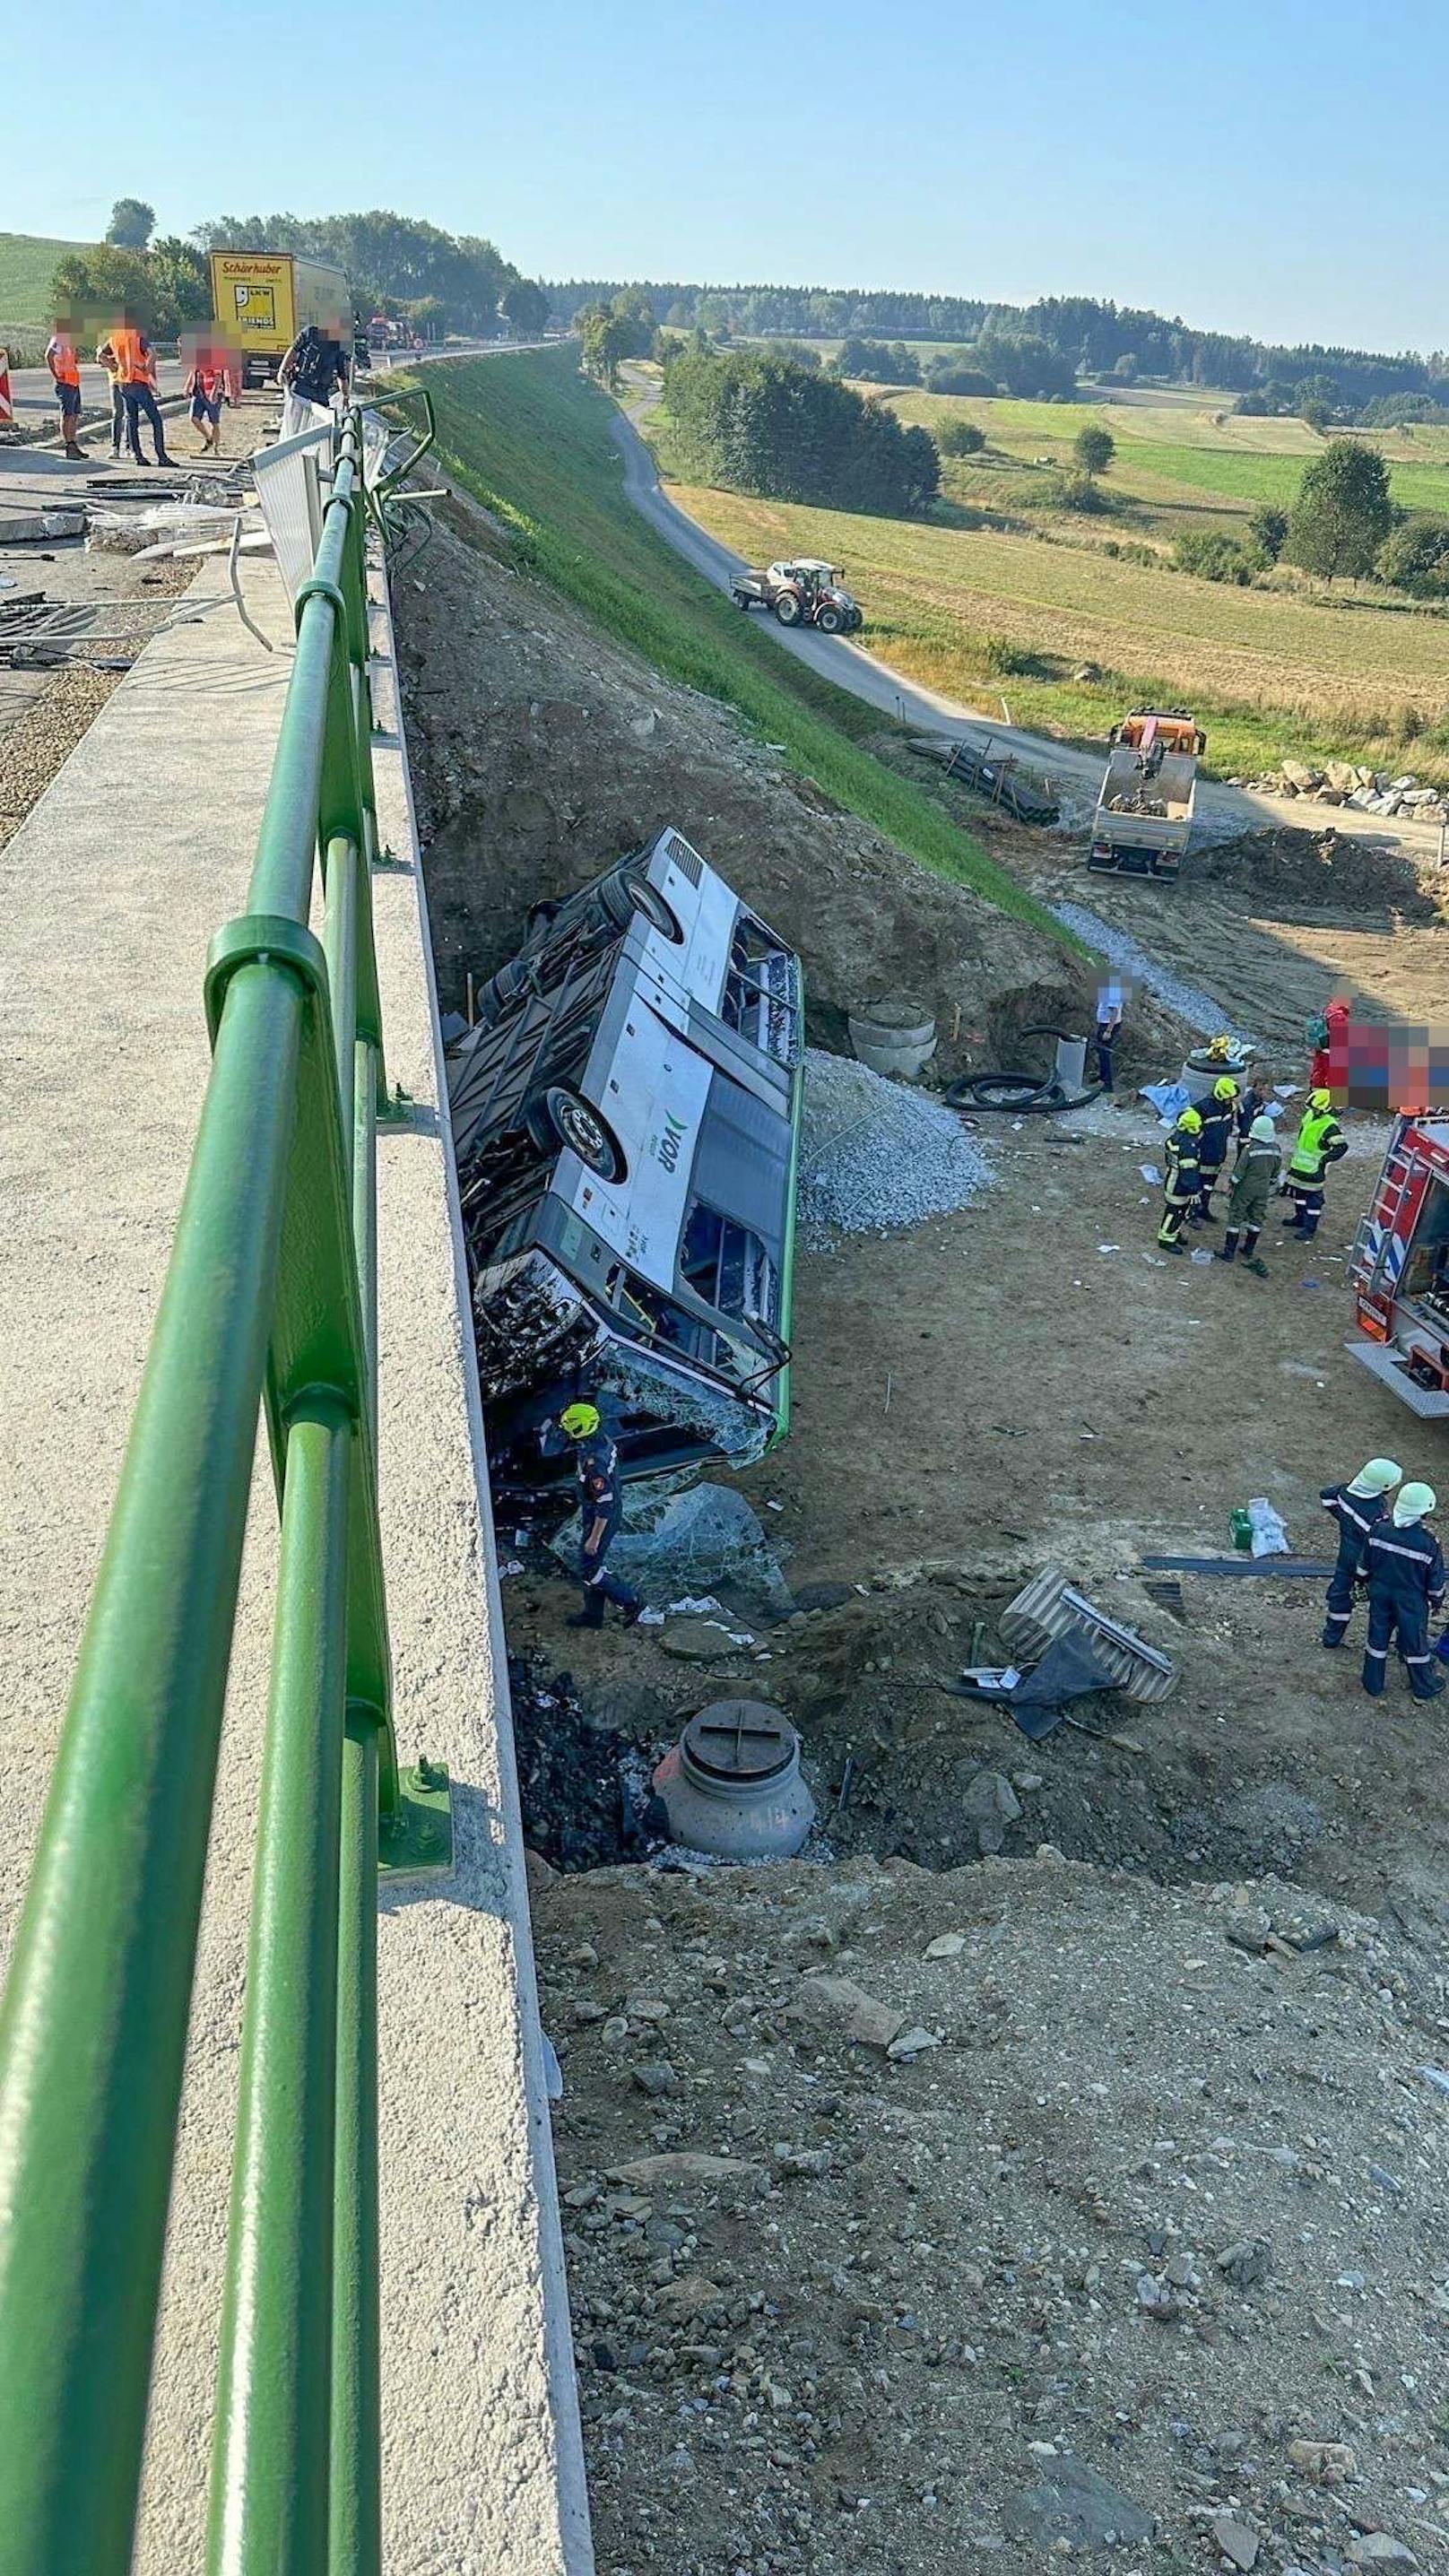 Anschließend kam der Schulbus in einem Baustellenbereich links von der Fahrbahn ab und stürzte etwa vier Meter von einer Brücke, berichtet "ORF Niederösterreich".